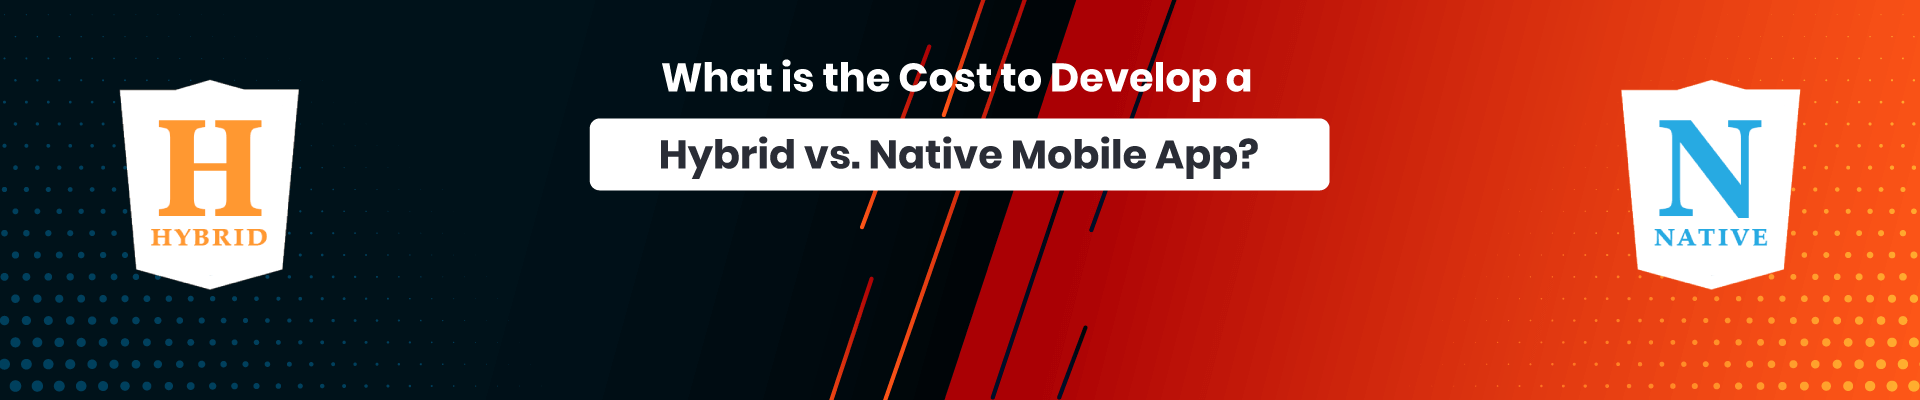 Hybrid vs Native Mobile App